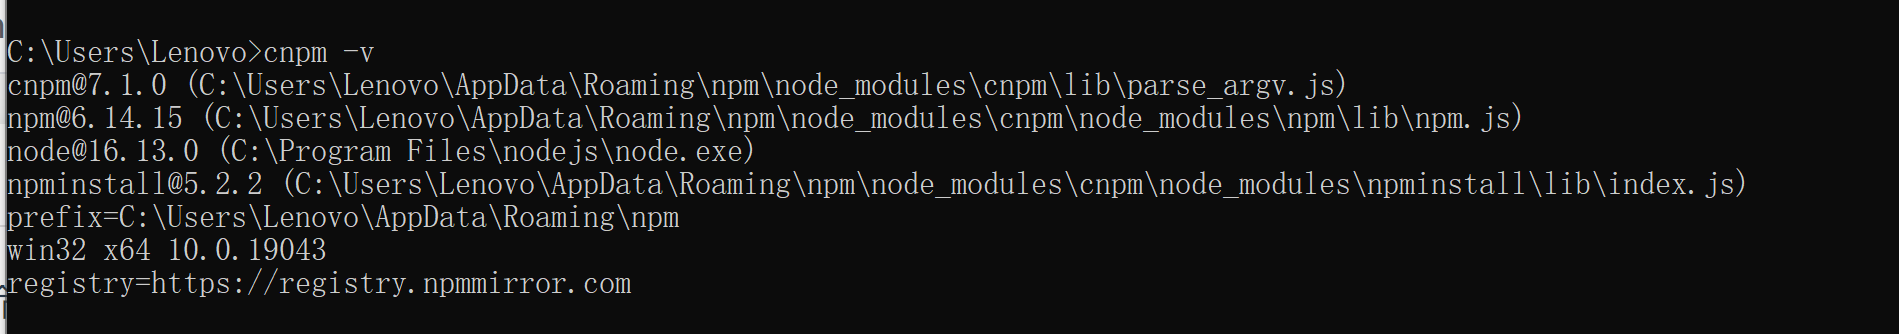 全局安装npm，cnpm，vue-cli等，终端可以使用，但是在vscode中不能使用的问题